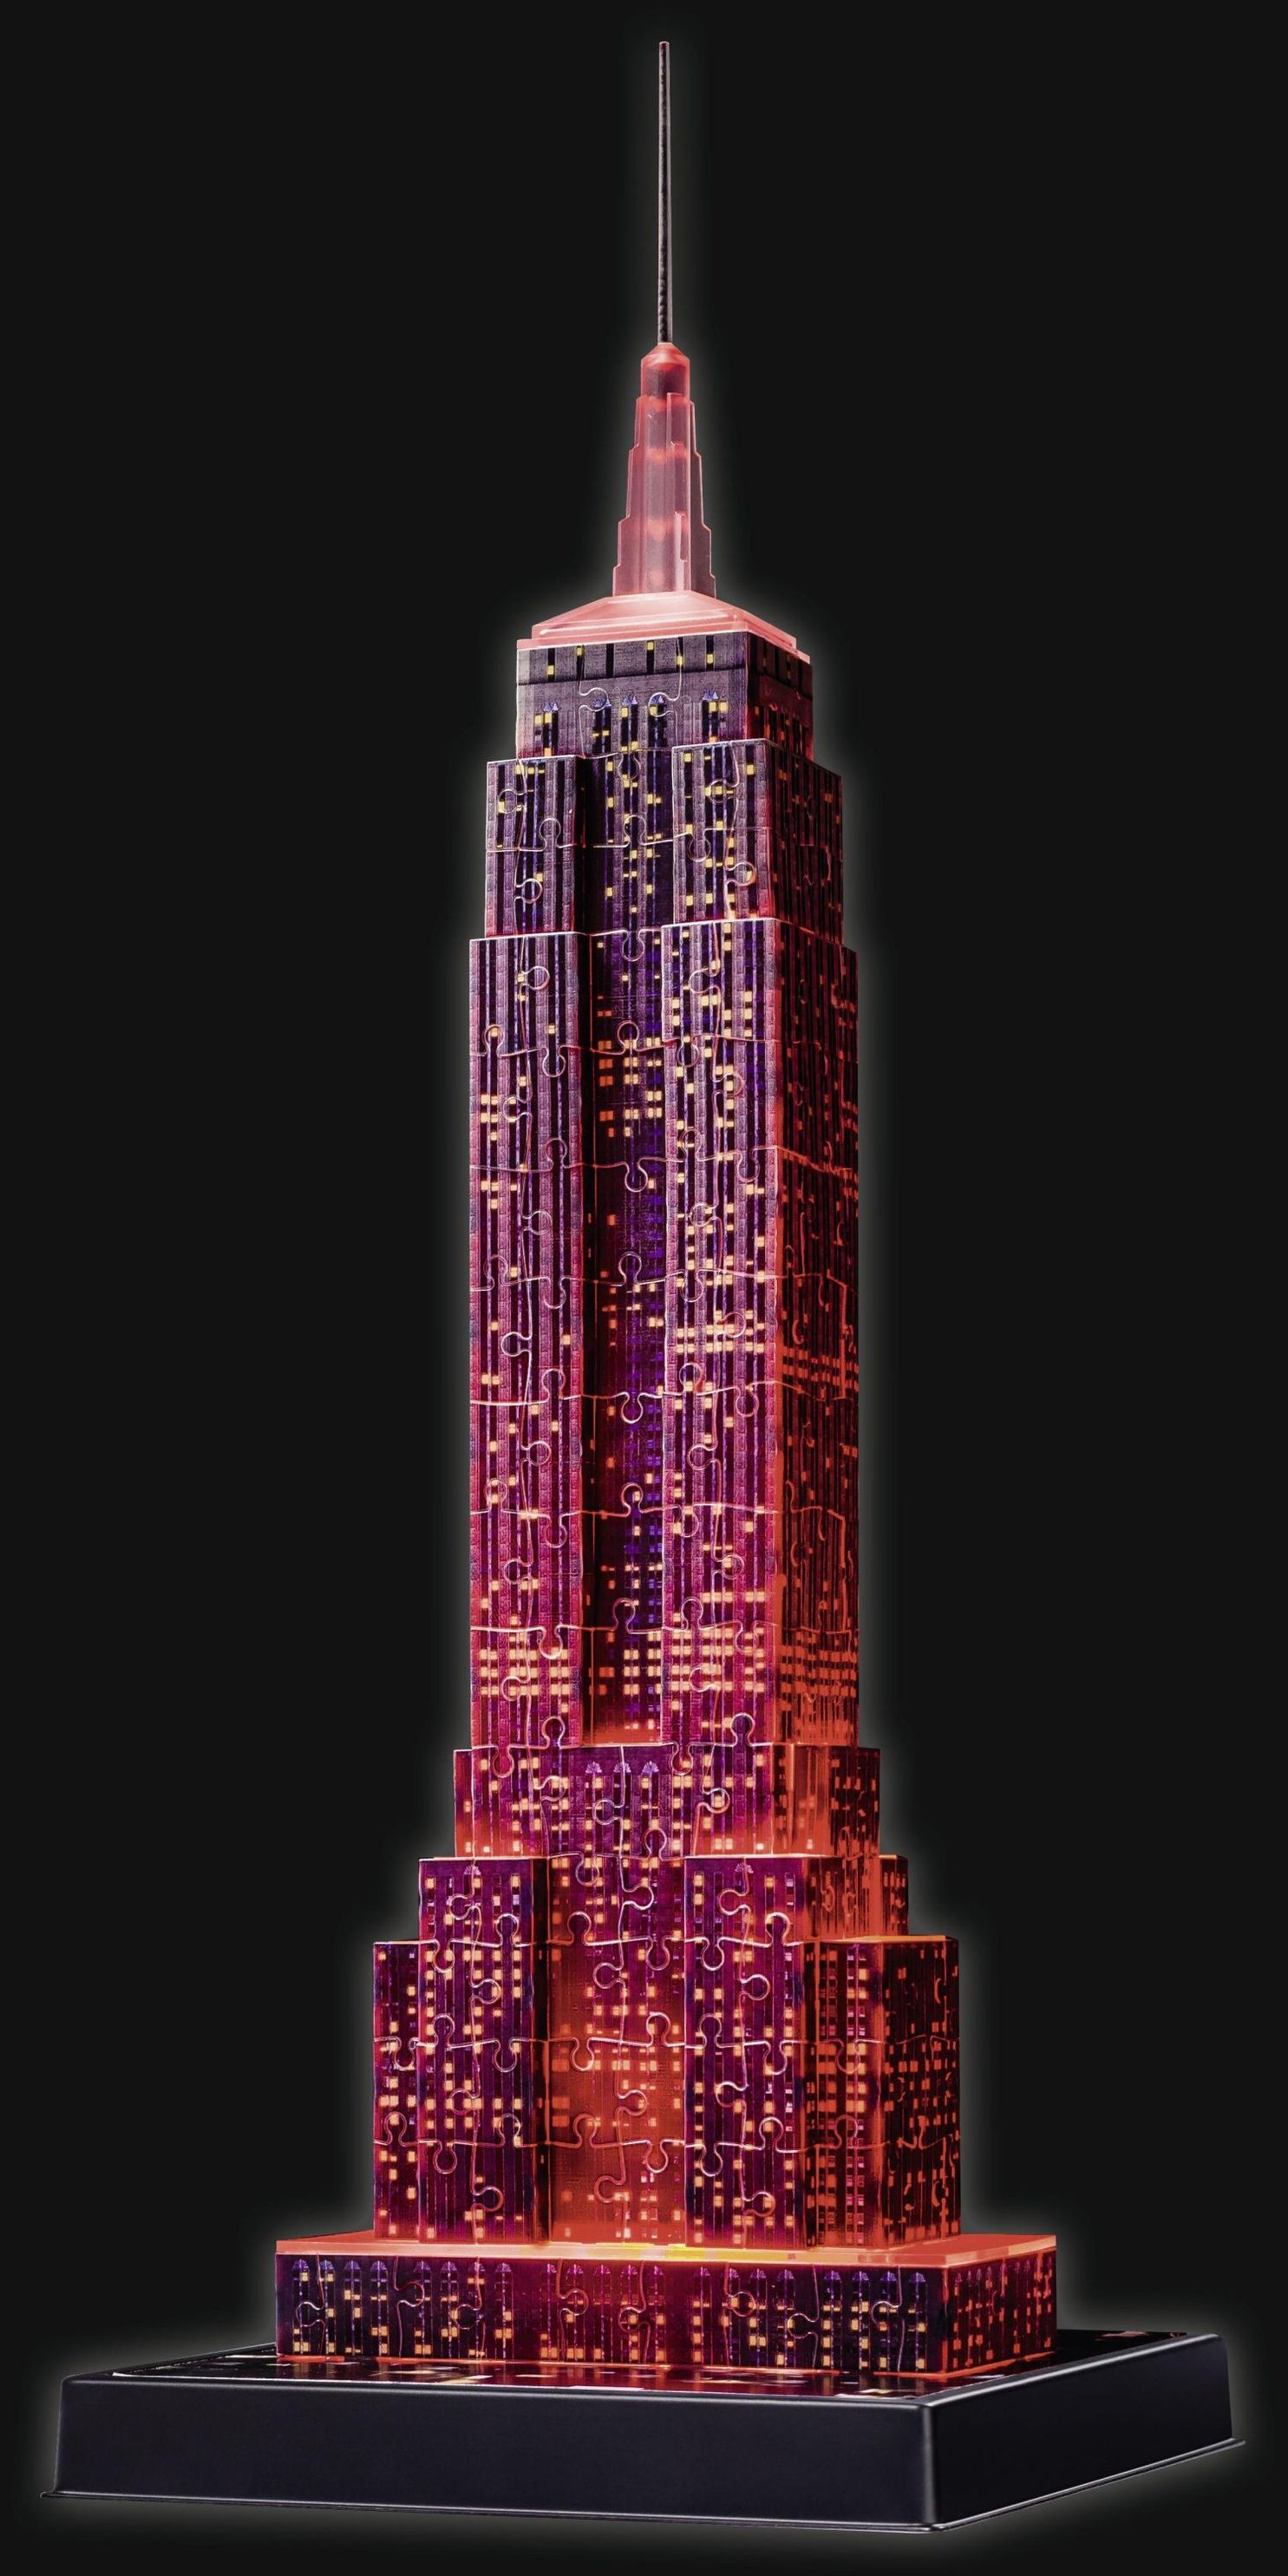 Ravensburger 3D Puzzle Empire State Building bei Nacht 12566 - das berühmte  Gebäude in New York - leuchtet im Dunkeln | Weltbild.at